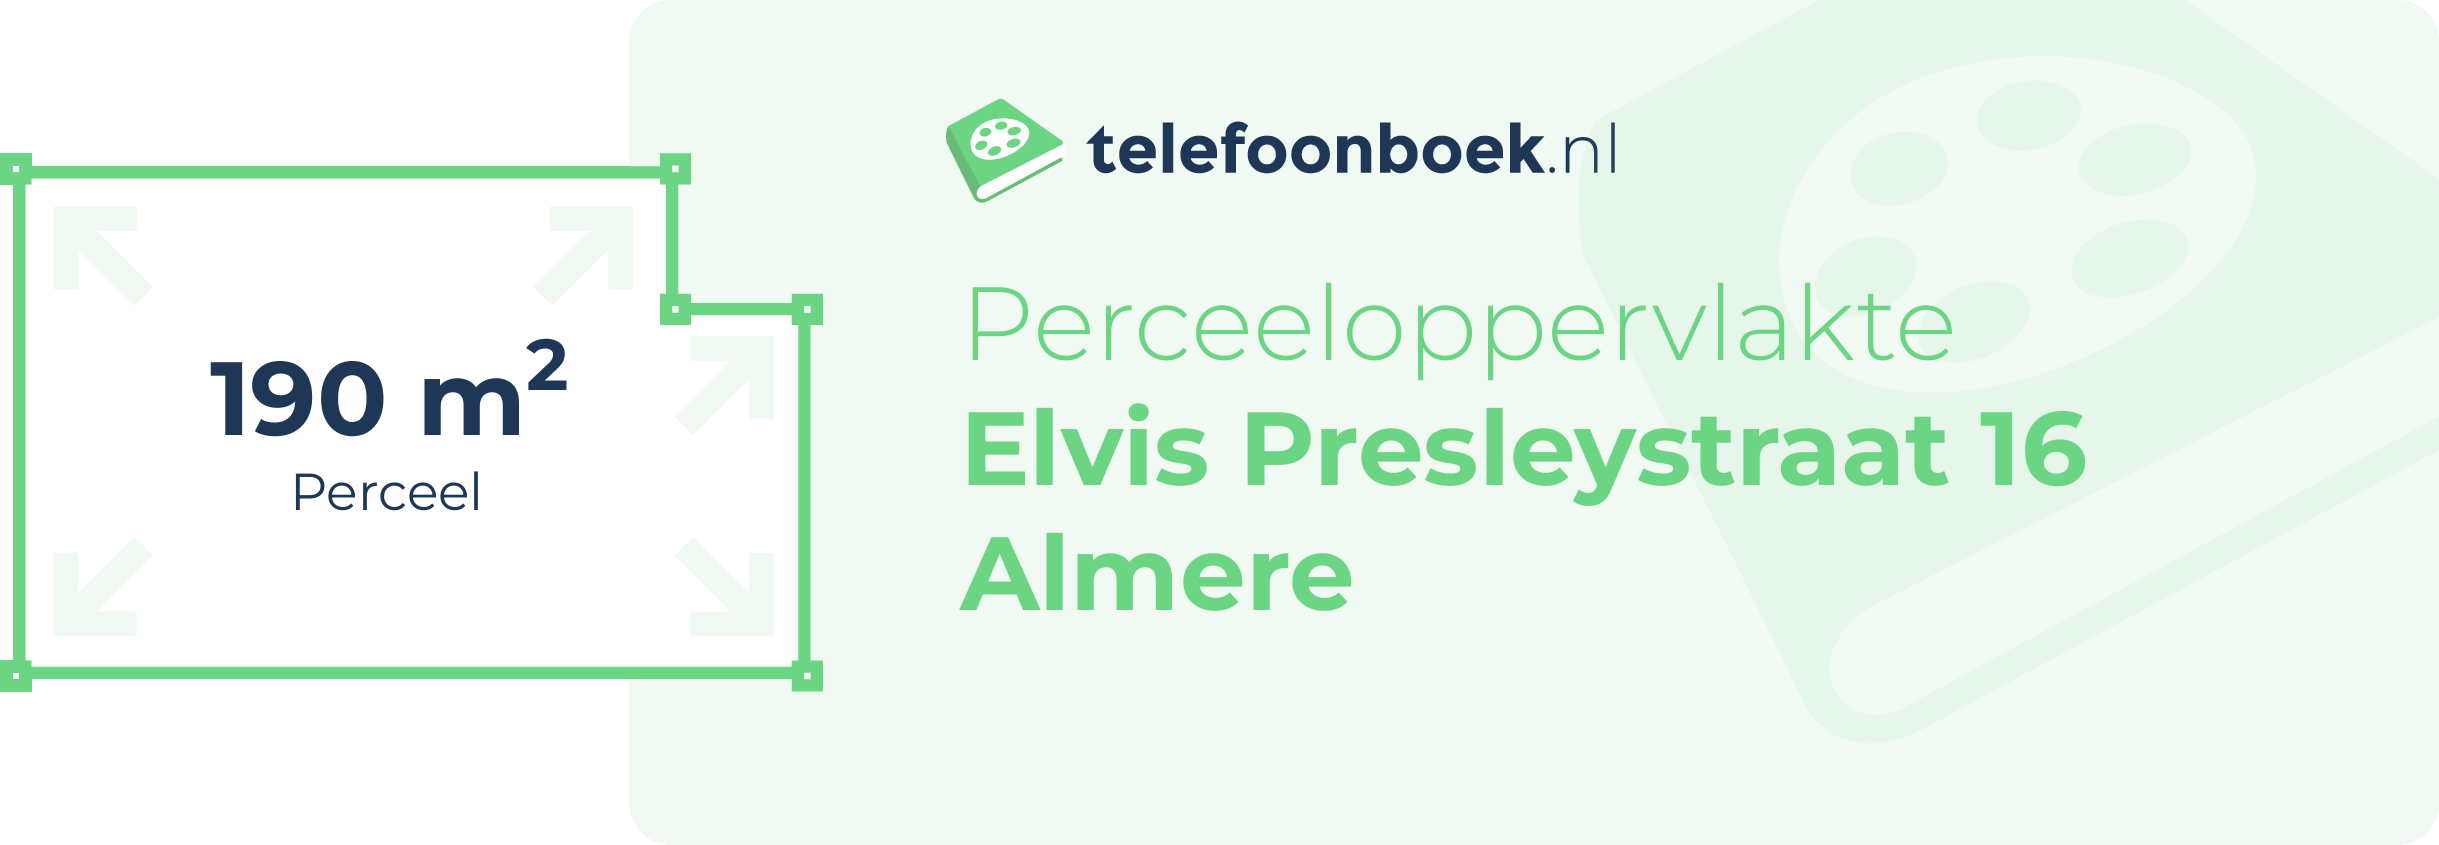 Perceeloppervlakte Elvis Presleystraat 16 Almere